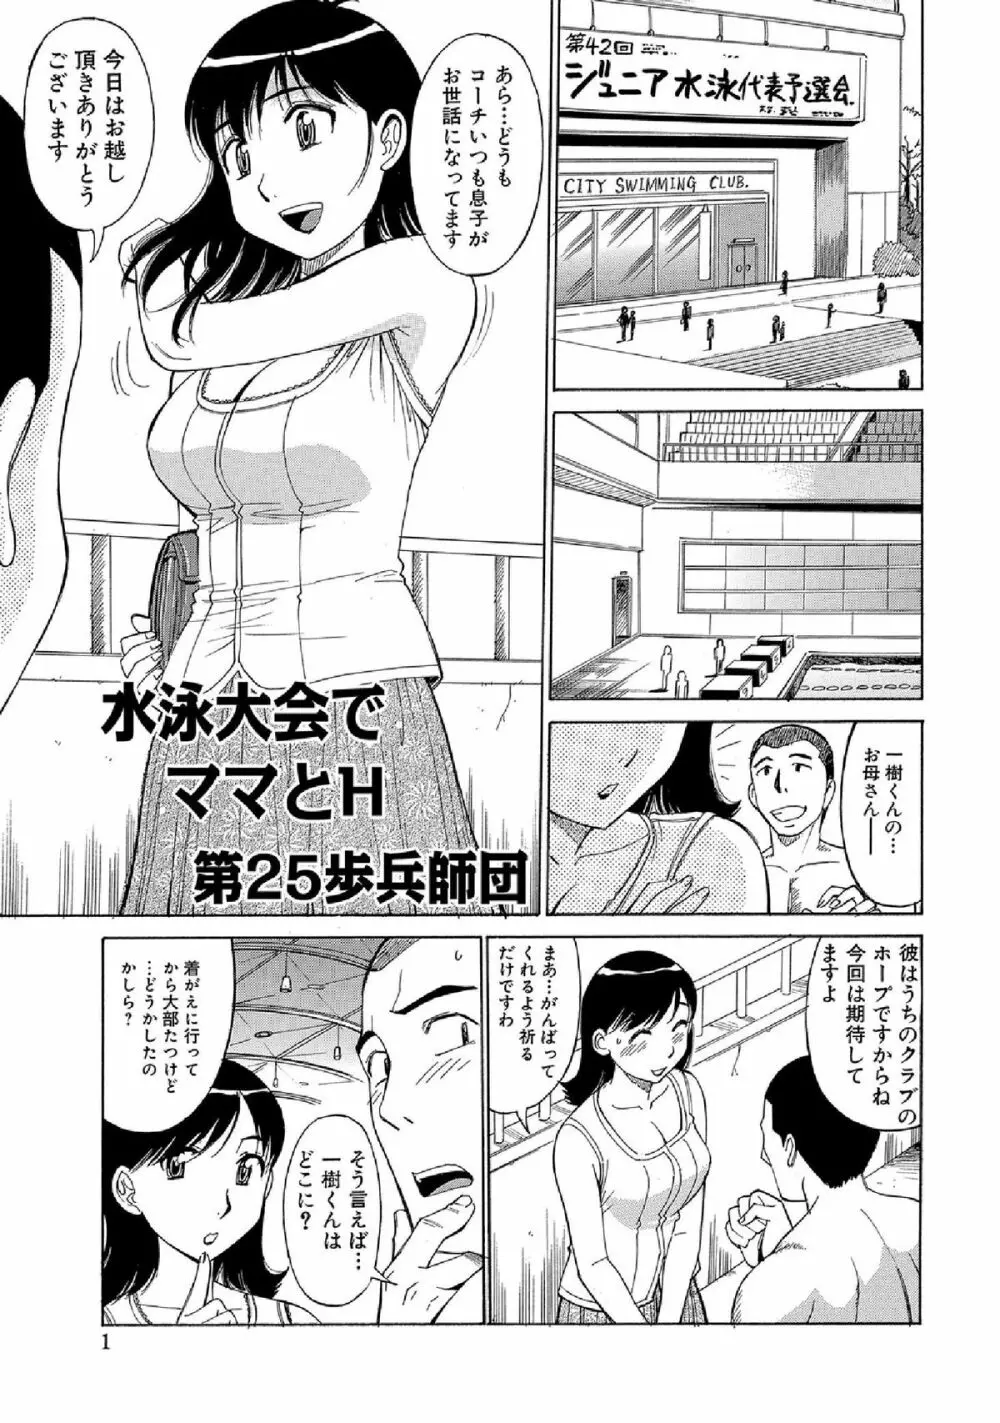 WEB版コミック激ヤバ! vol.52 283ページ